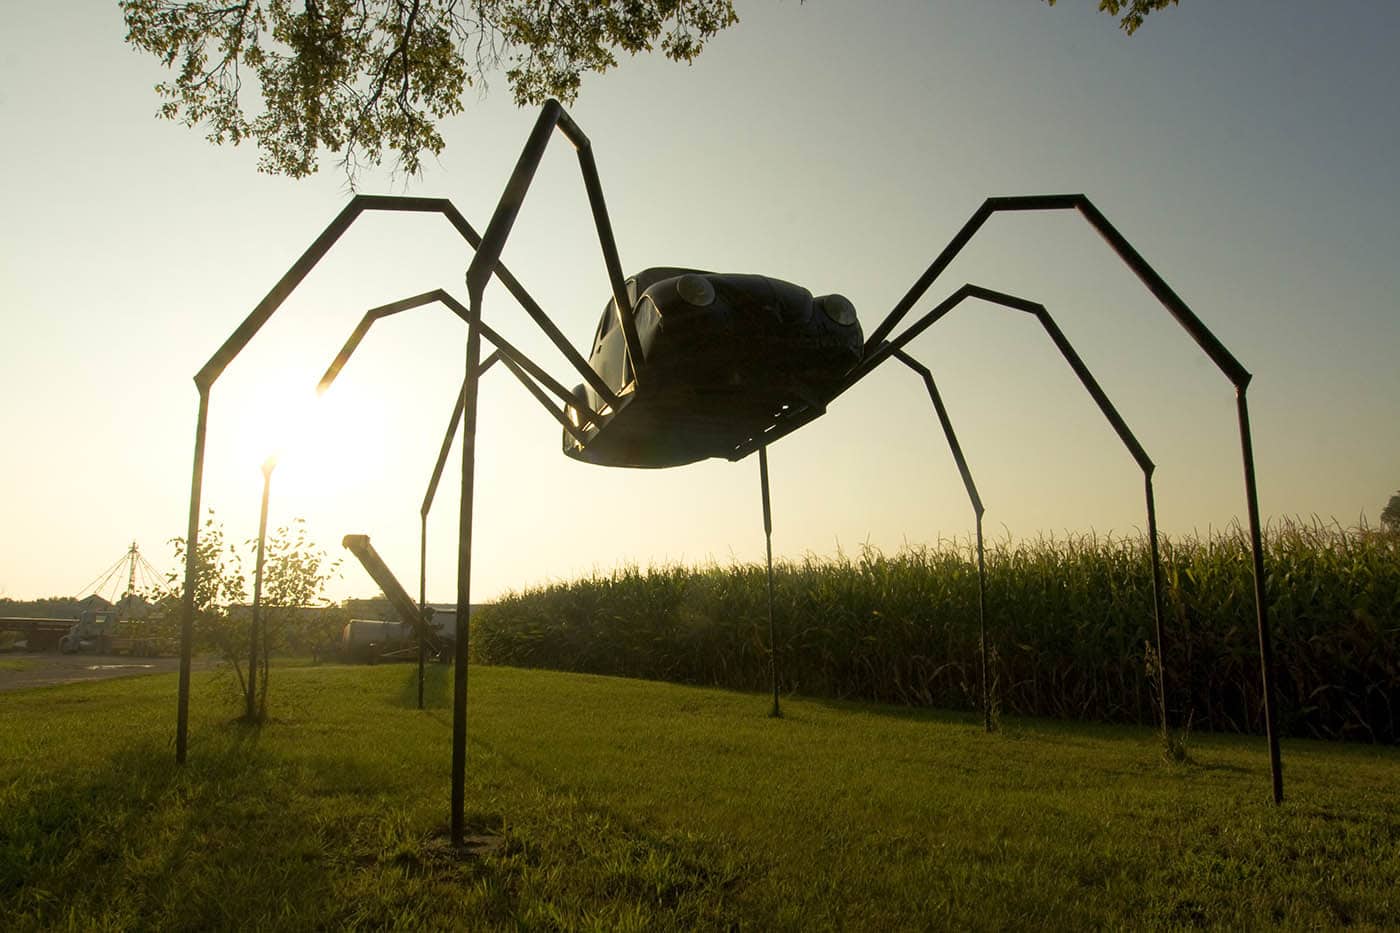 Giant Volkswagen Beetle Spider in Avoca, Iowa. Giant Spider made from a Volkswagen Beetle car - a roadside attraction in Avoca, Iowa.